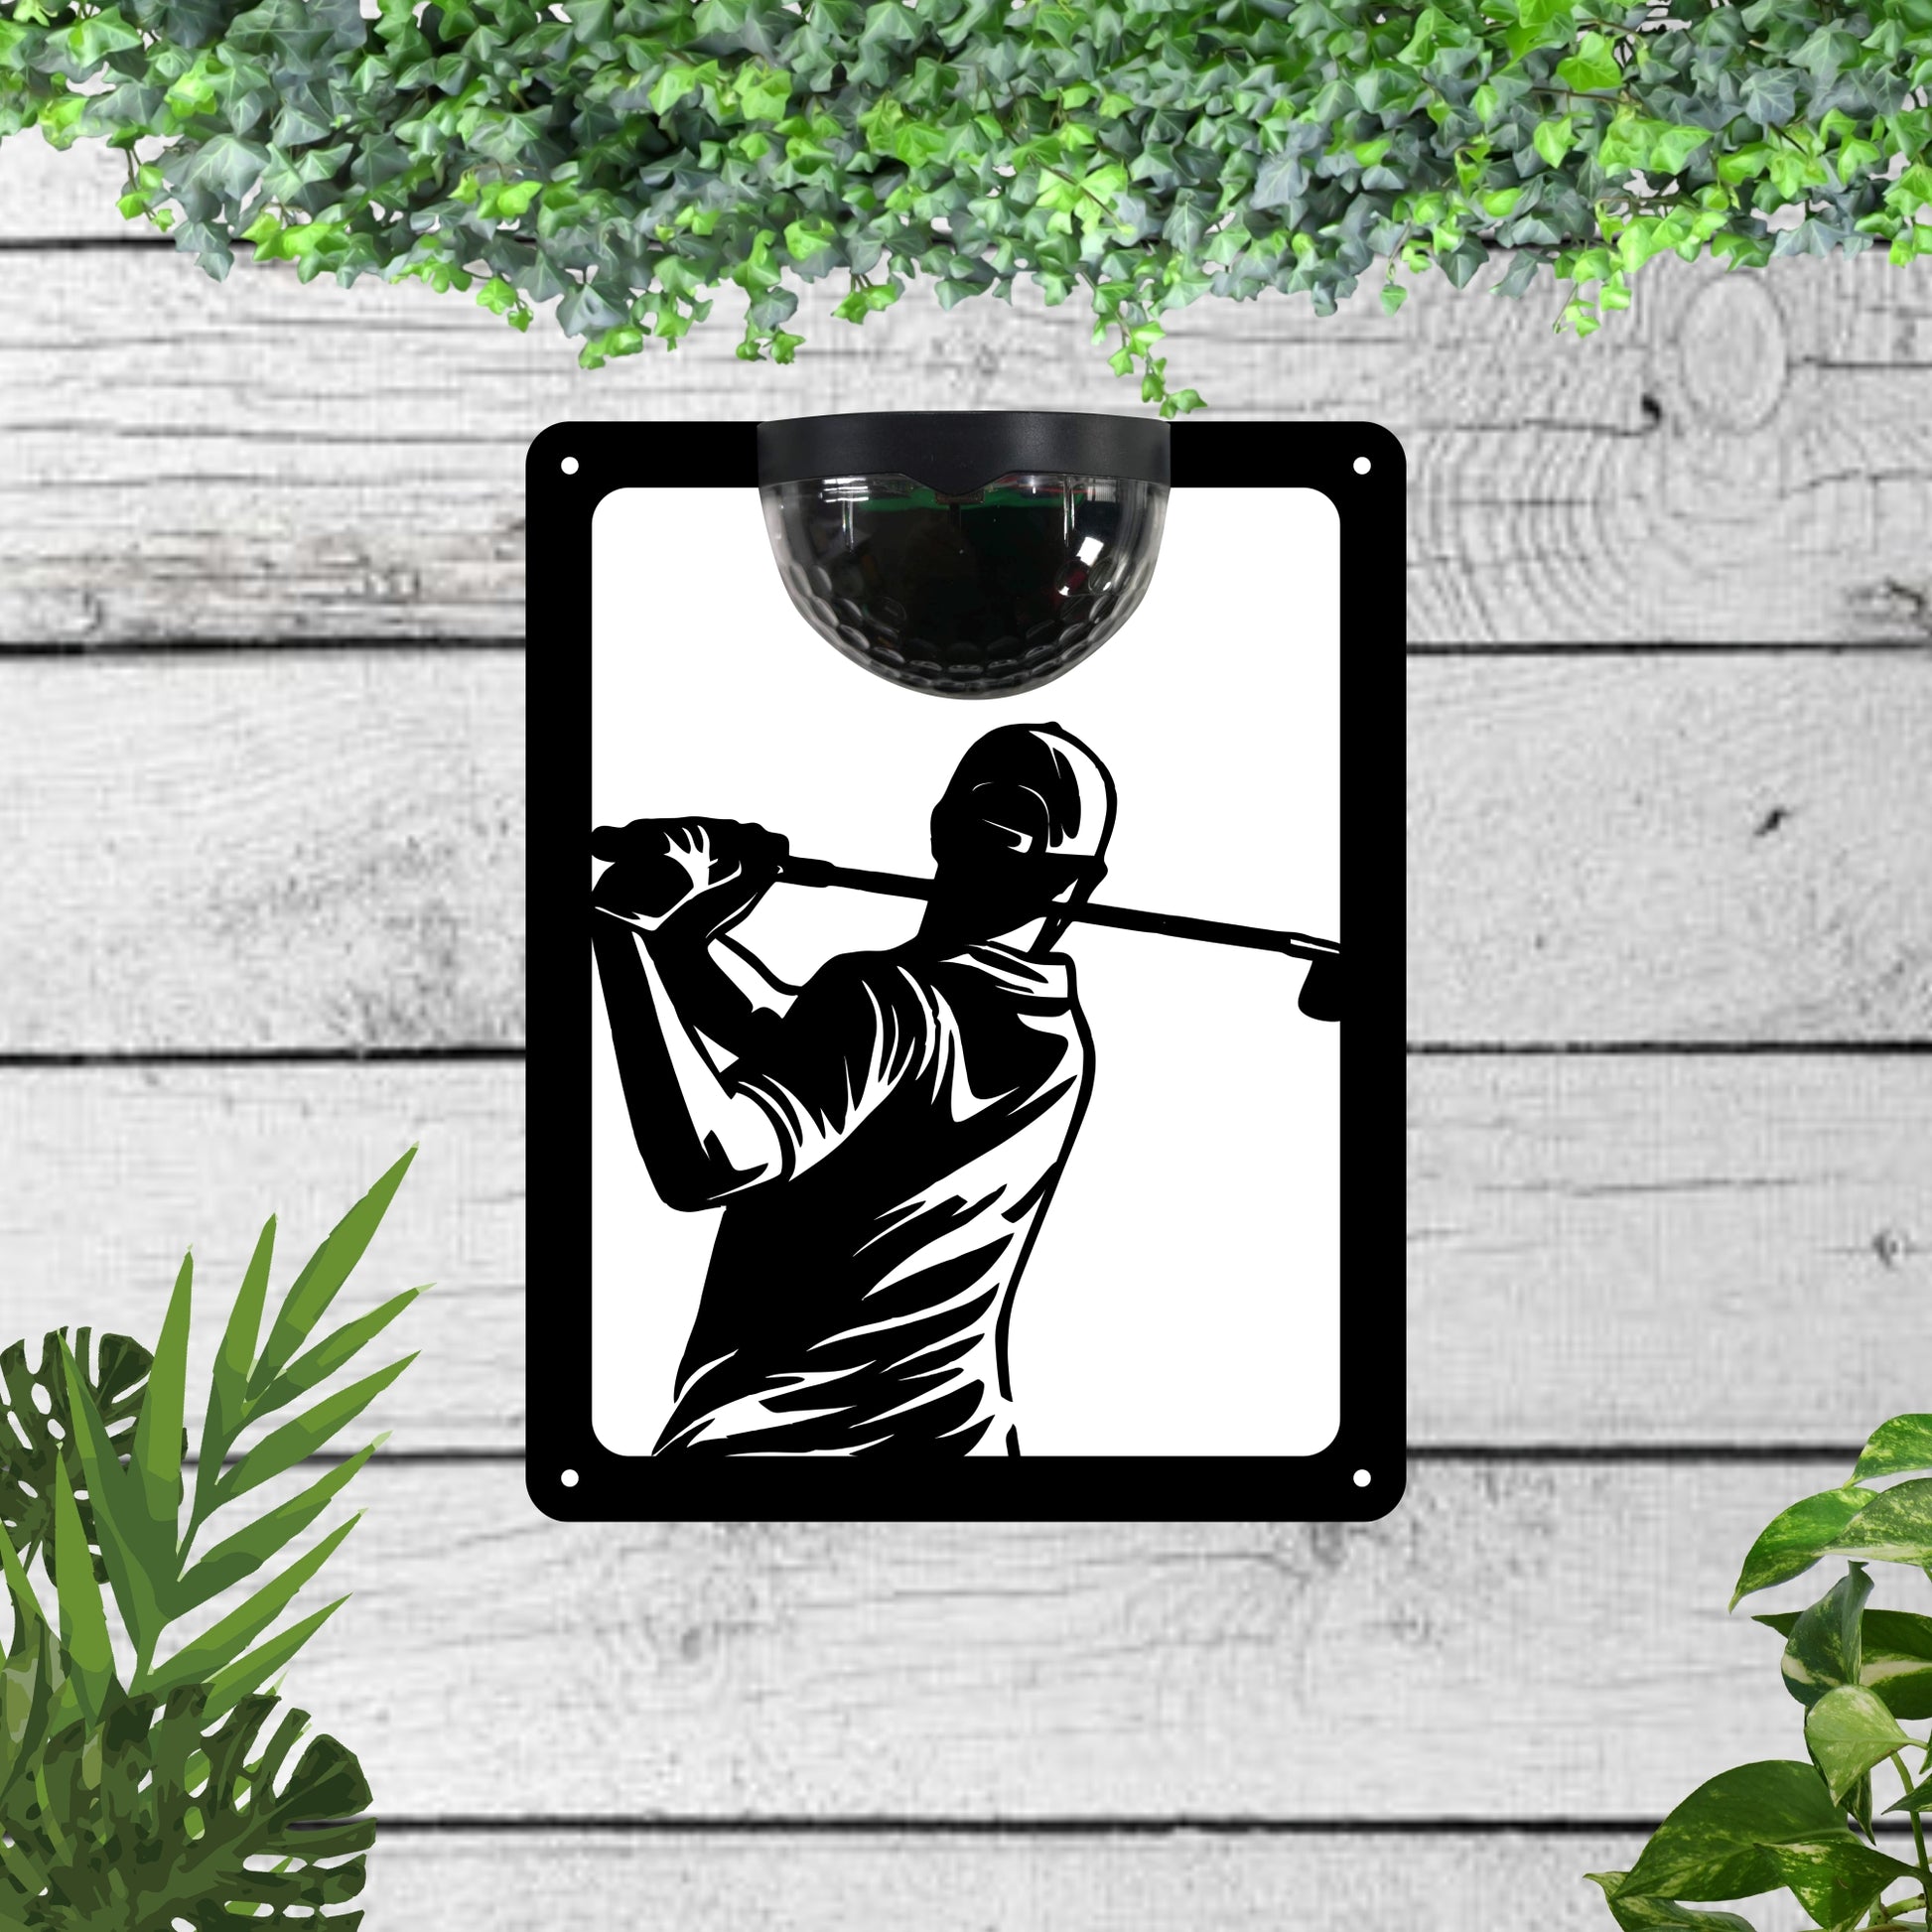 Garden Solar Light Wall Plaque with a Golfer | John Alans